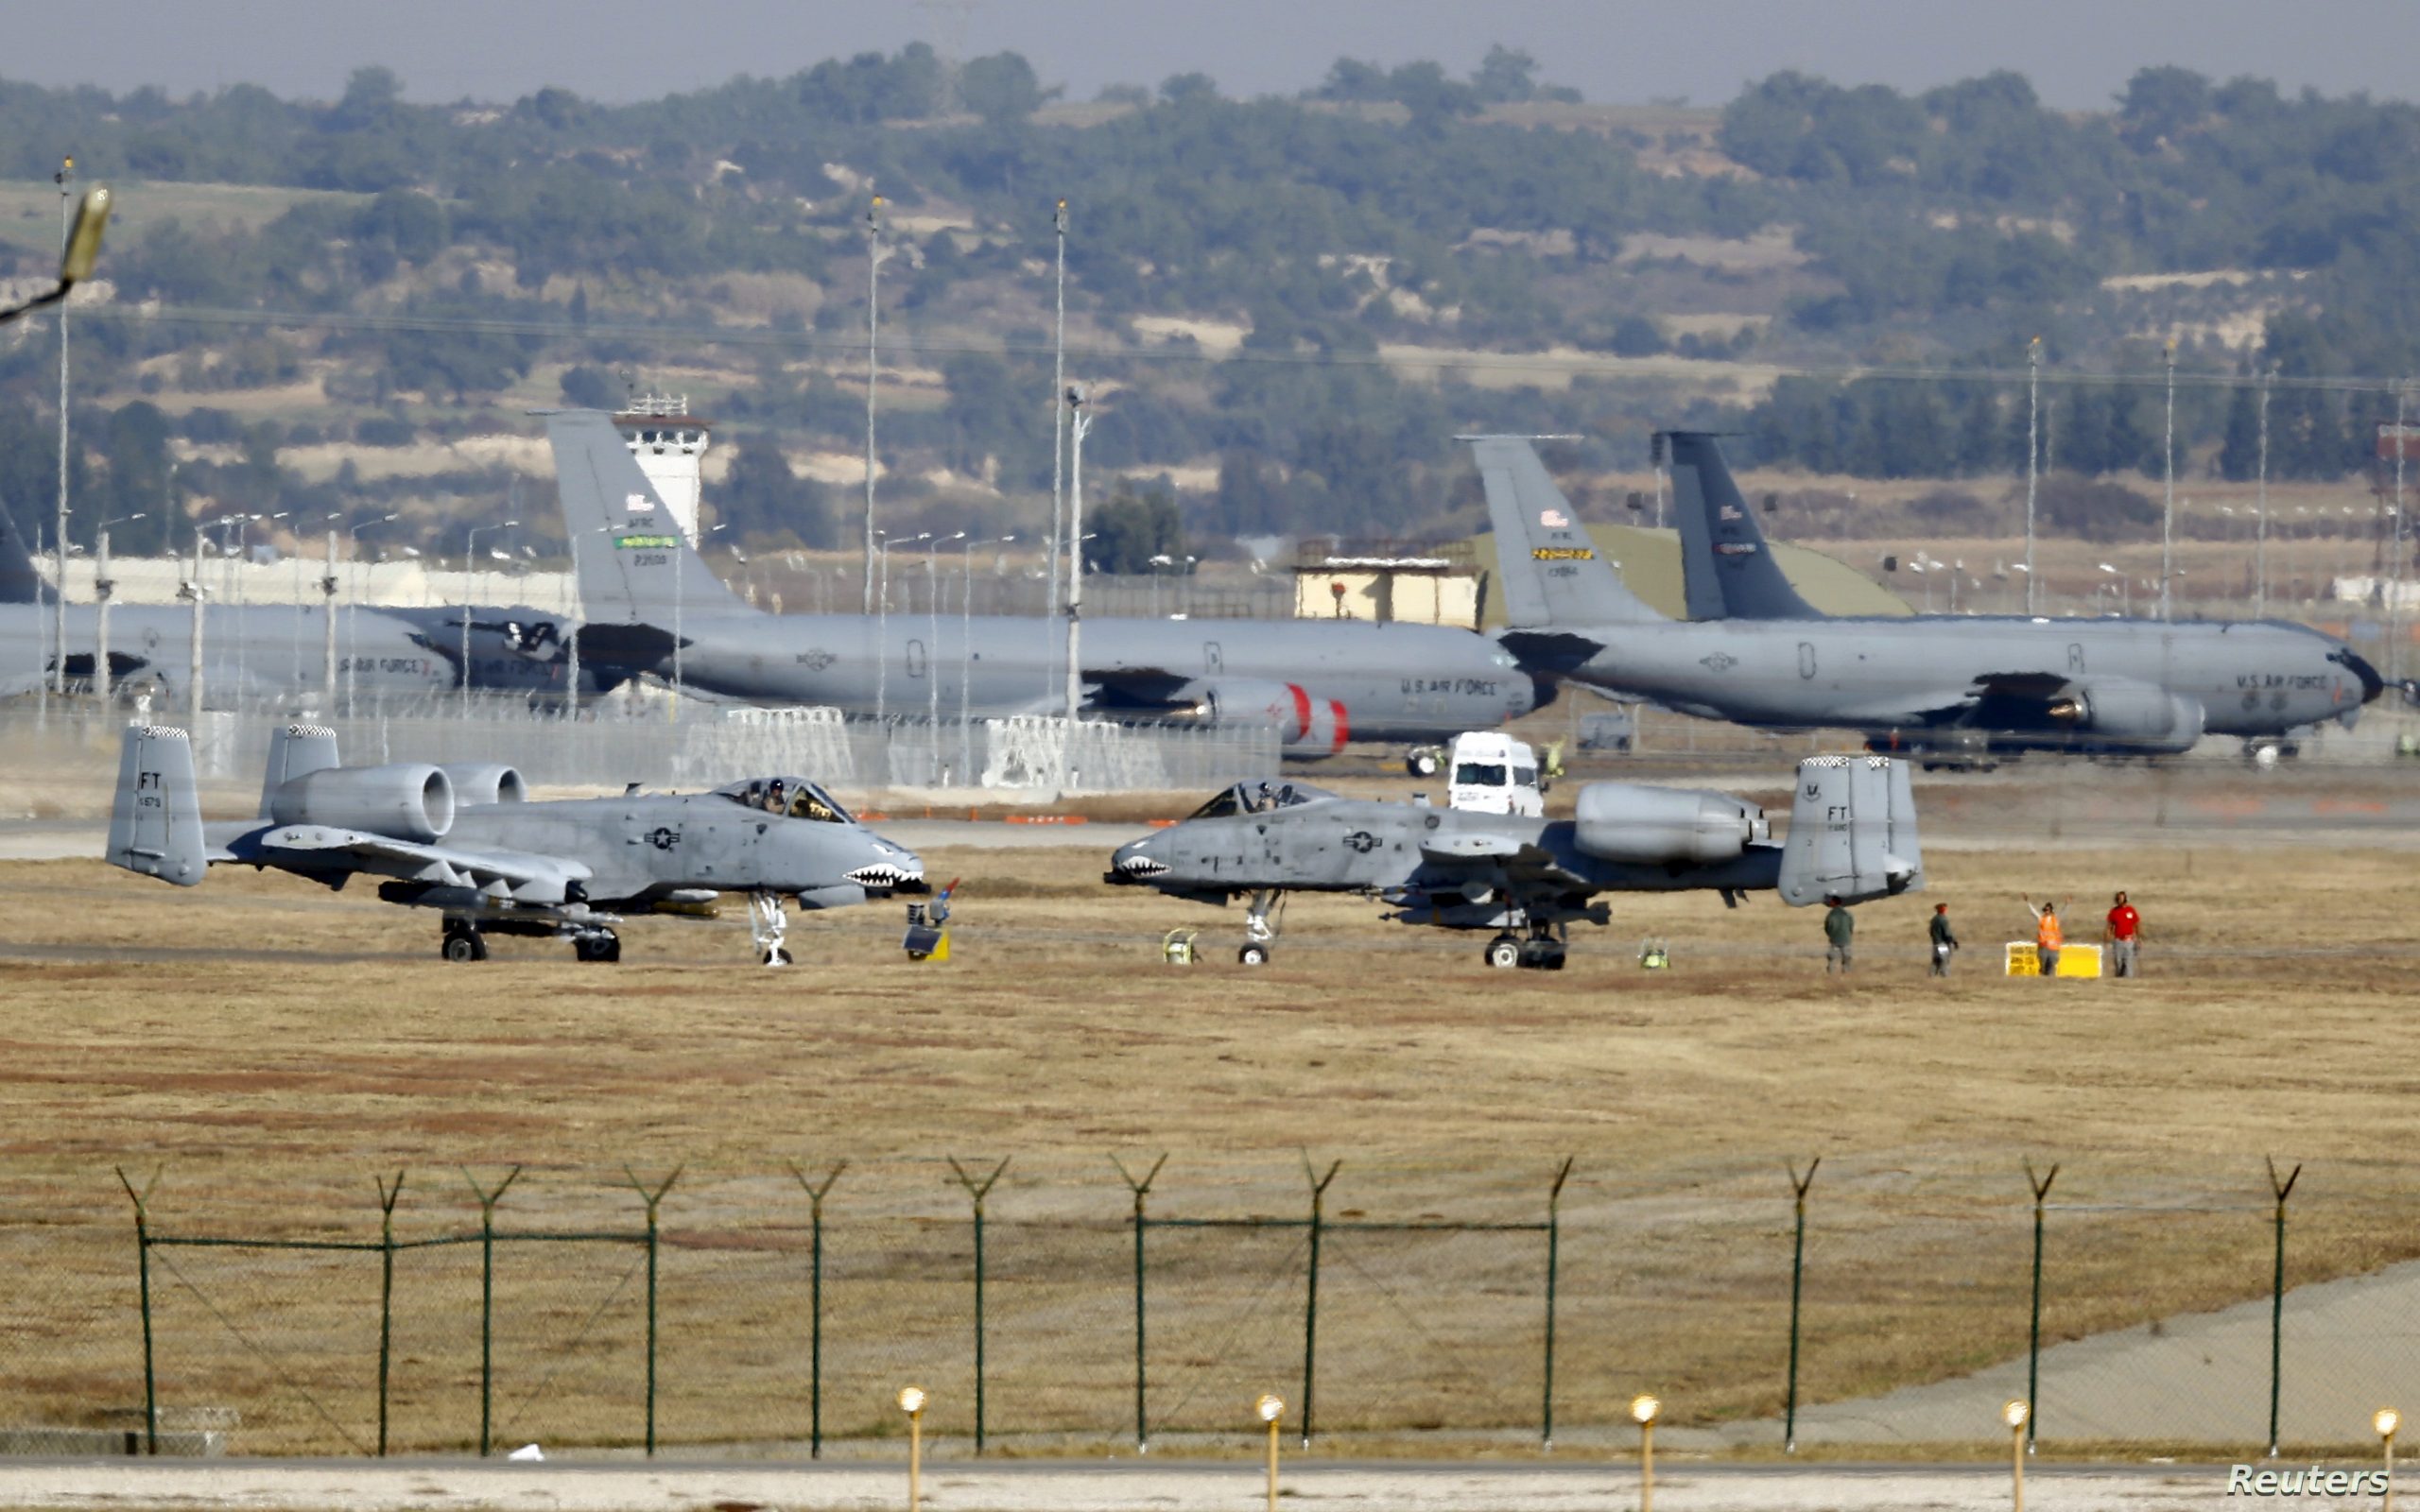 Ankara threatens to close down U.S. Air Force base in Turkey